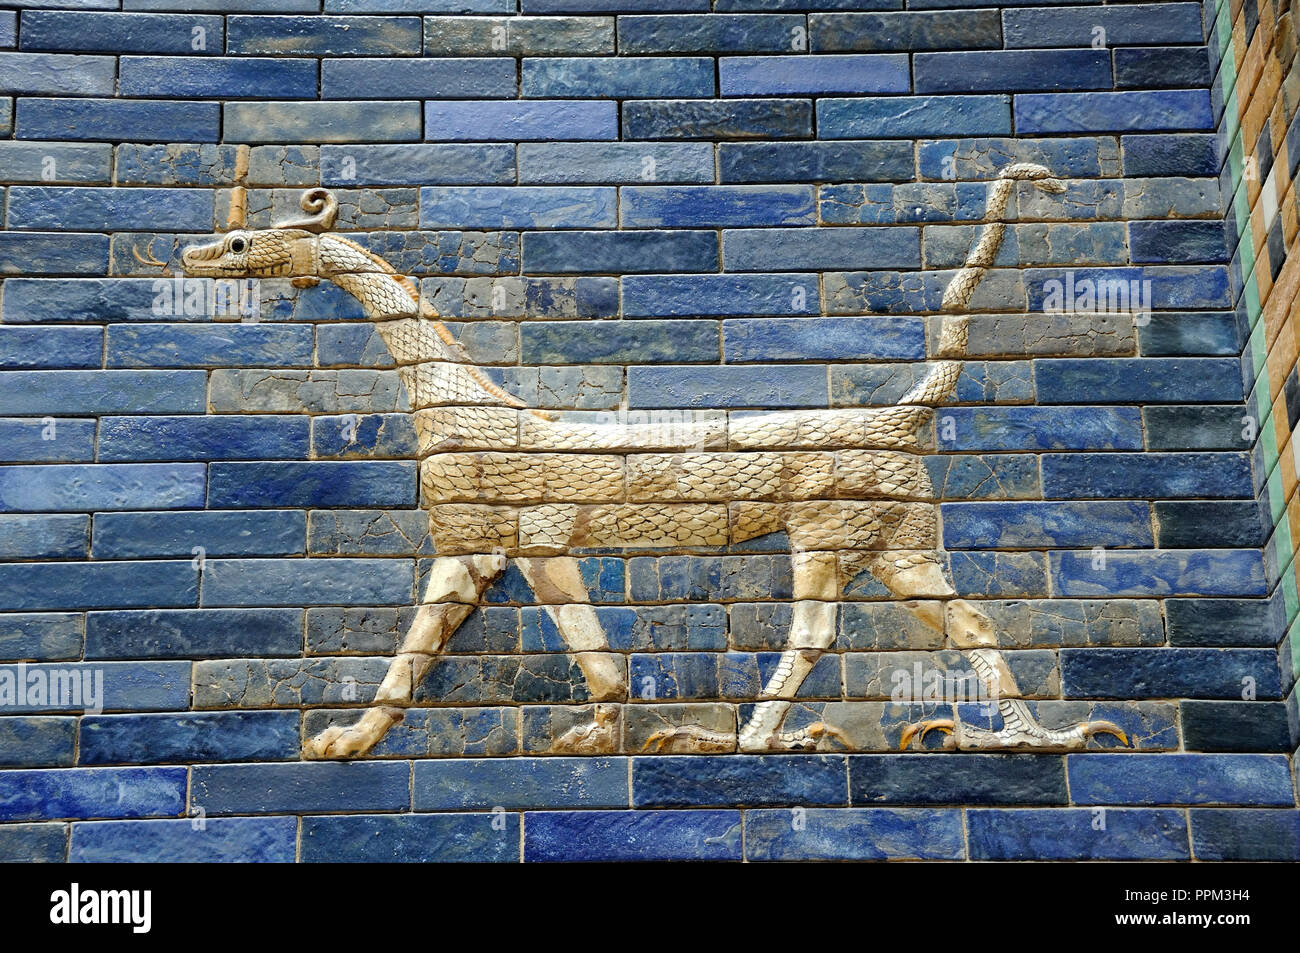 Détail de la porte d'Ishtar, Babylone. Pergamonmuseum. Berlin, Allemagne Banque D'Images